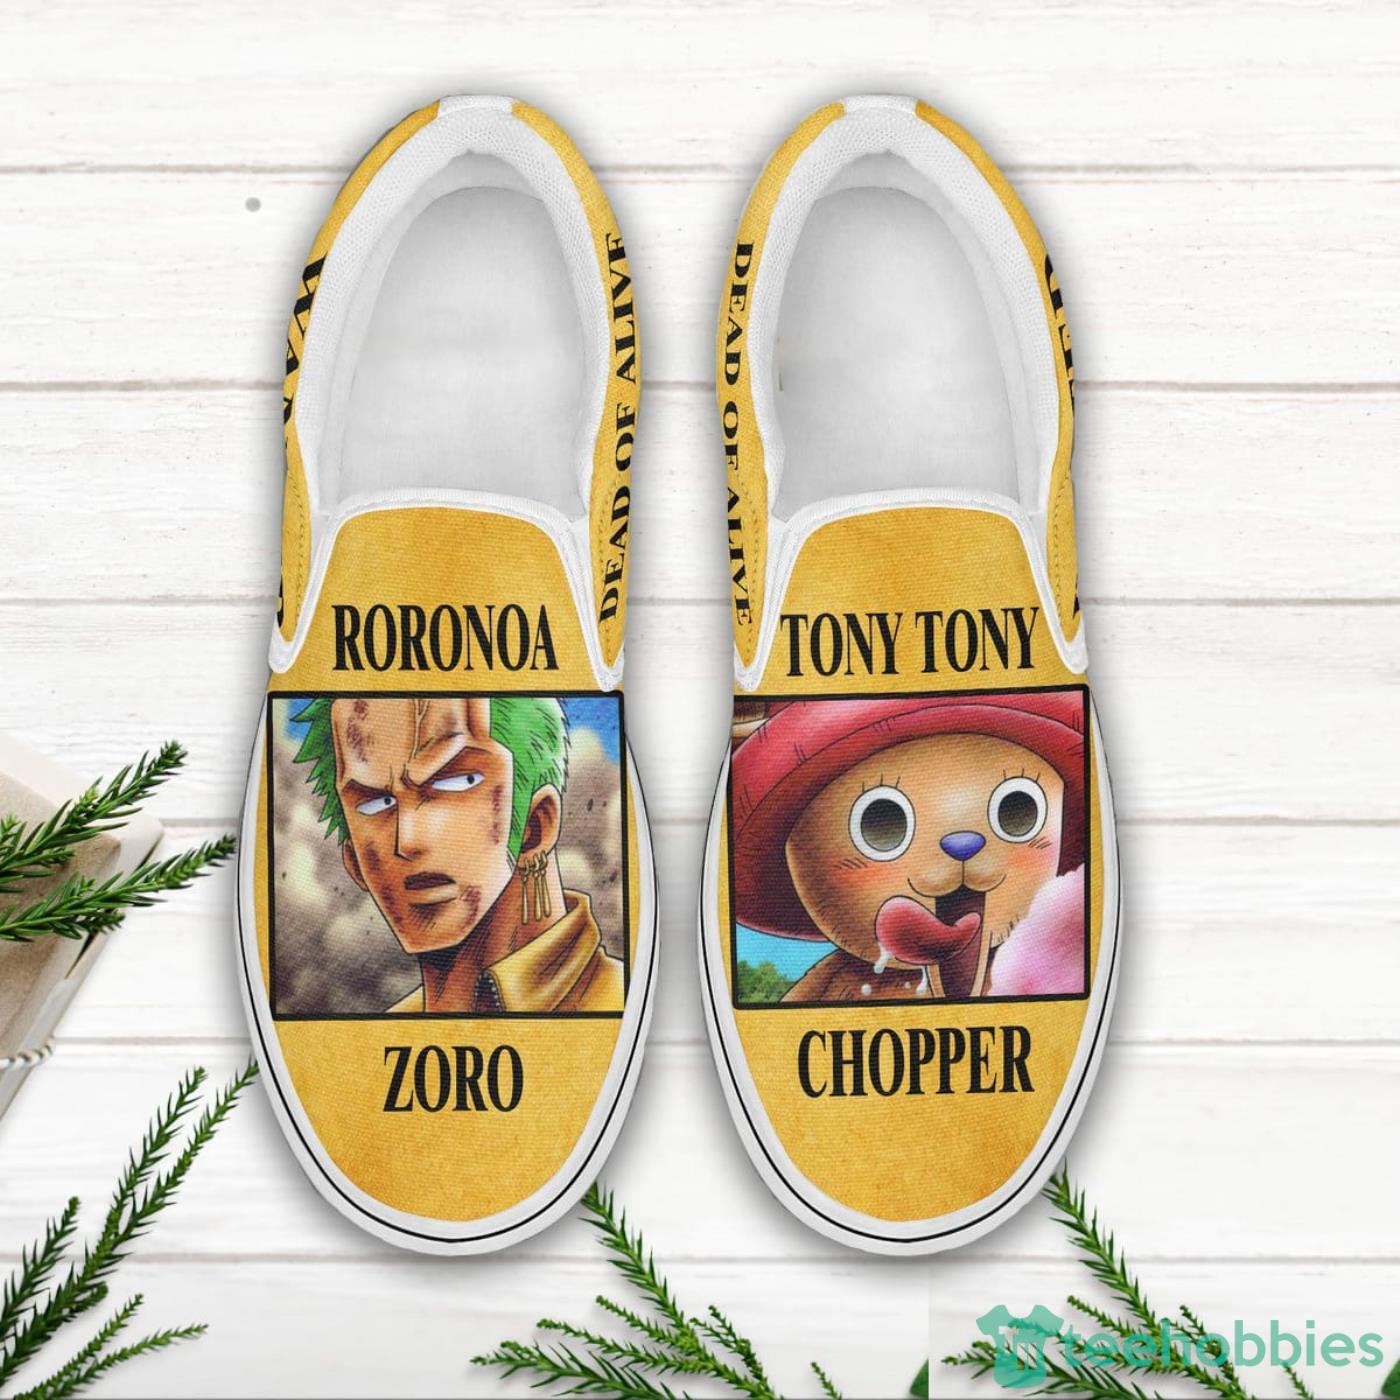 Roronoa Zoro and Tony Tony Chopper